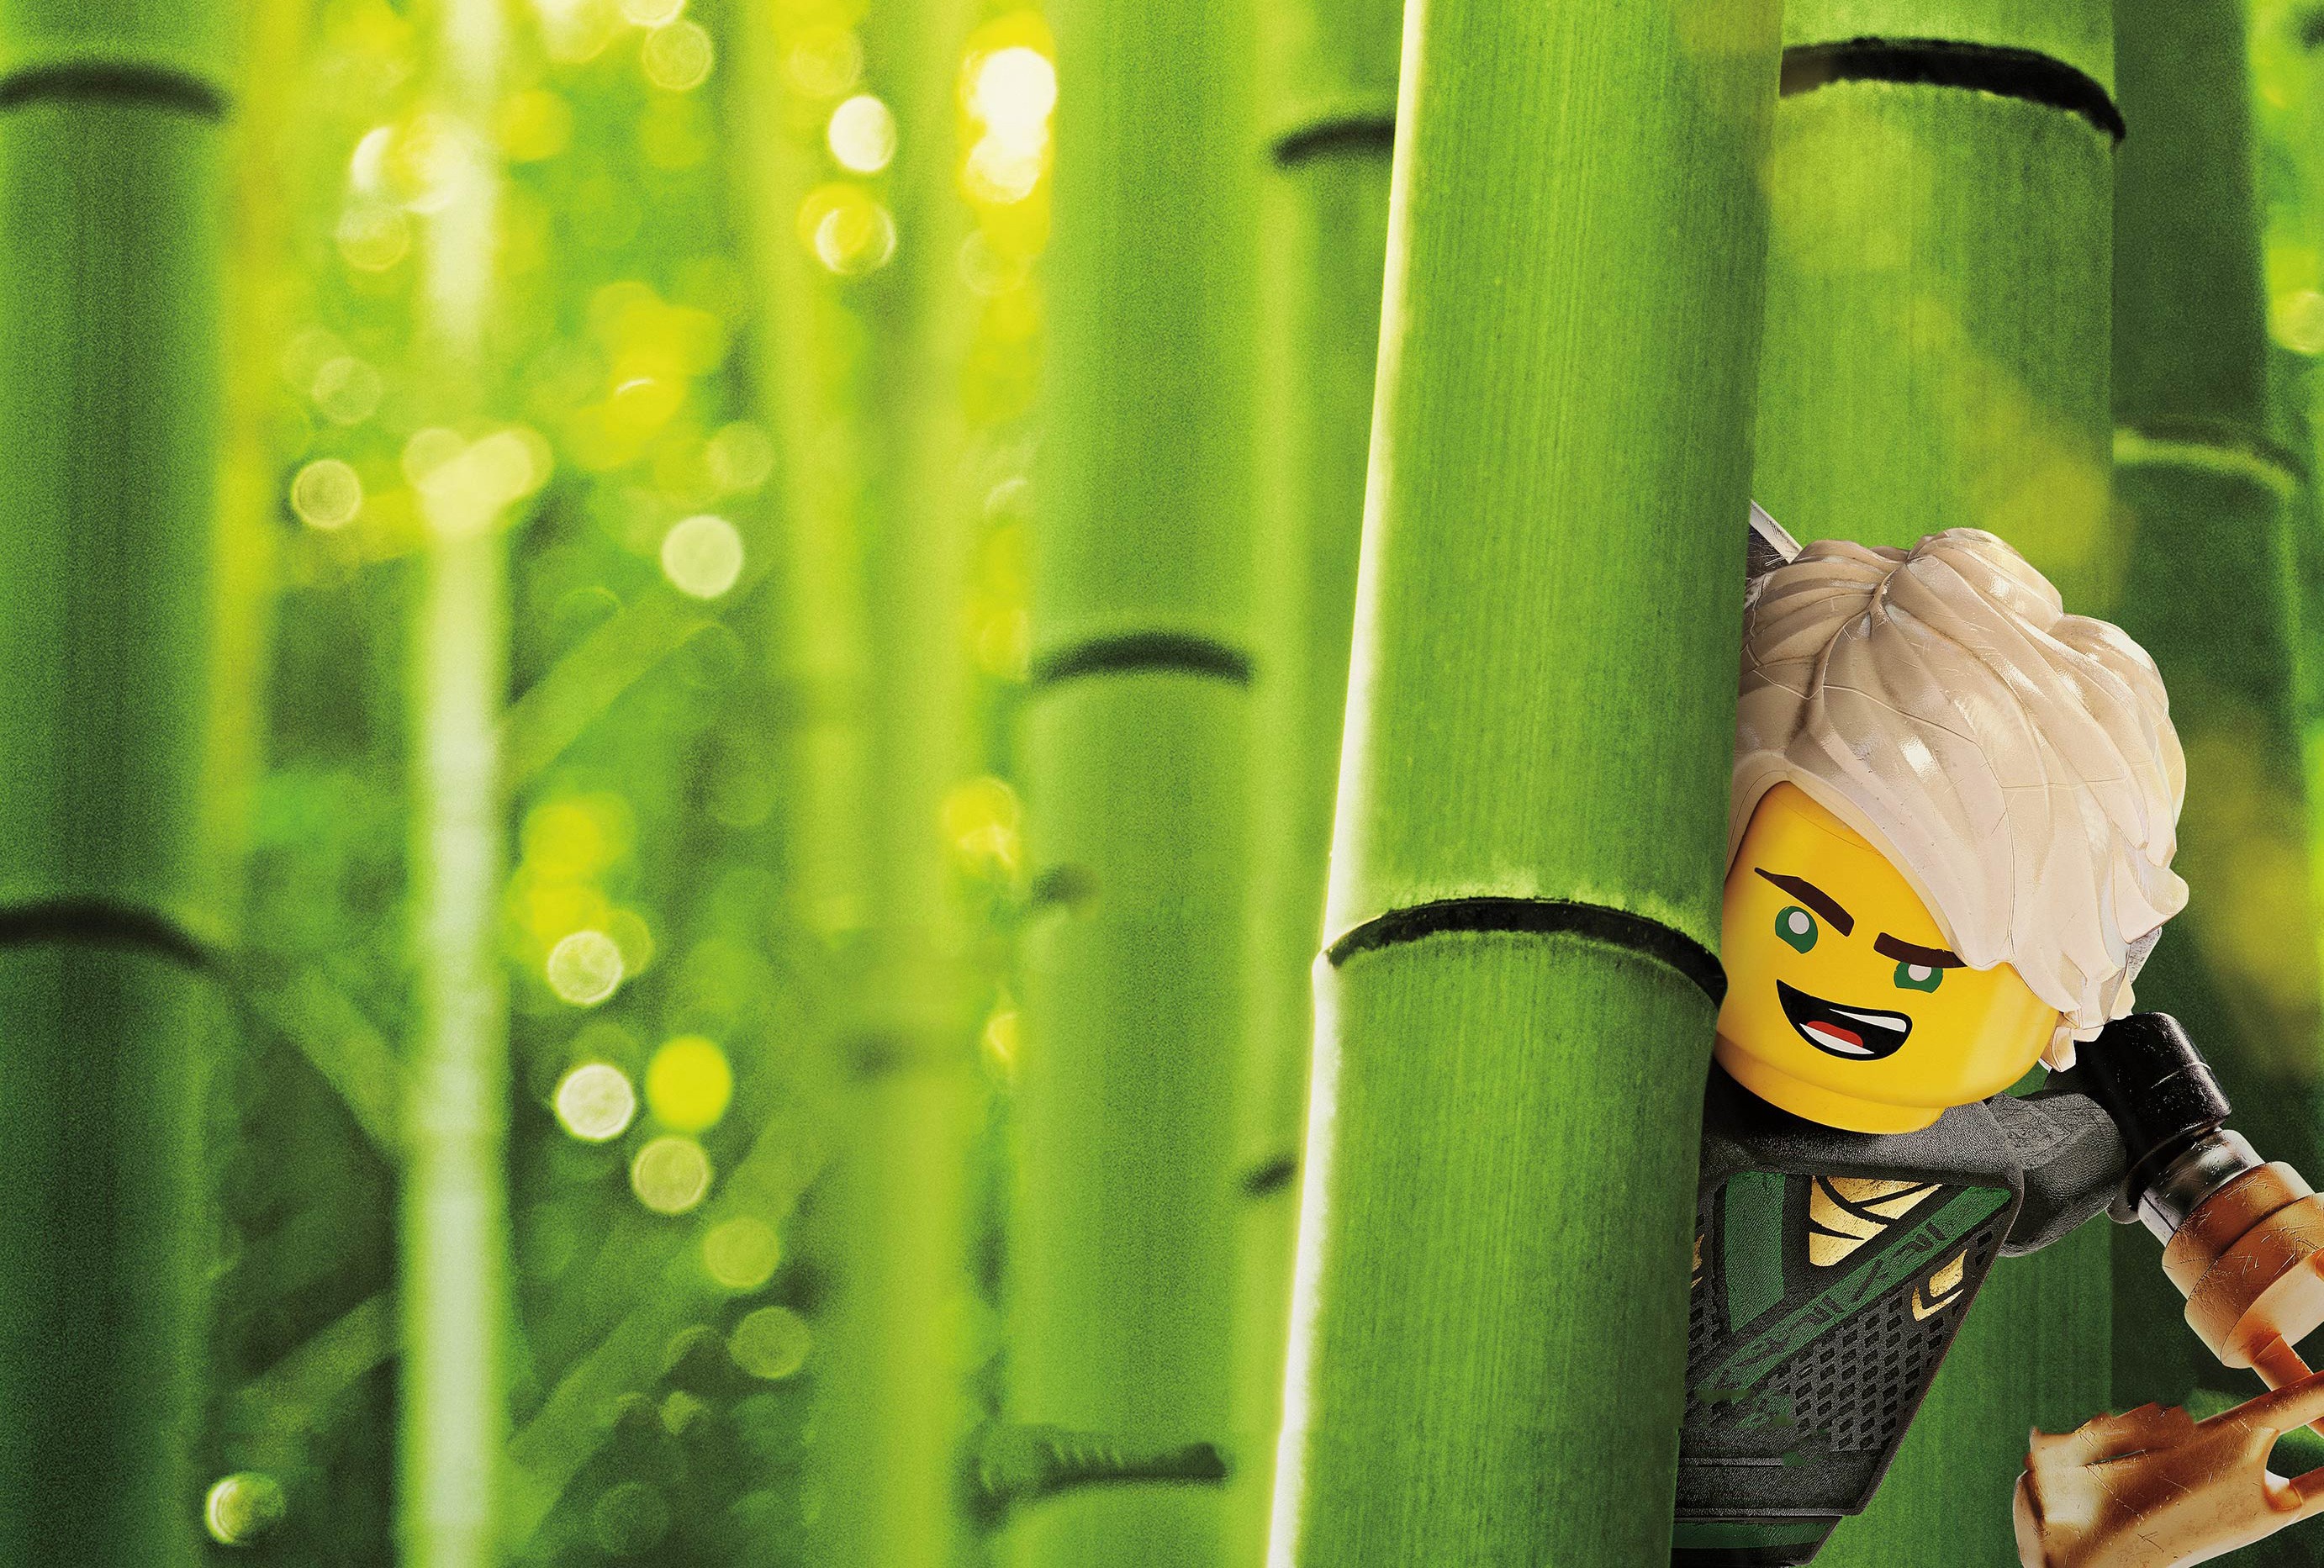 Bamboo Lego Lloyd Garmadon The Lego Ninjago Movie 2764x1865